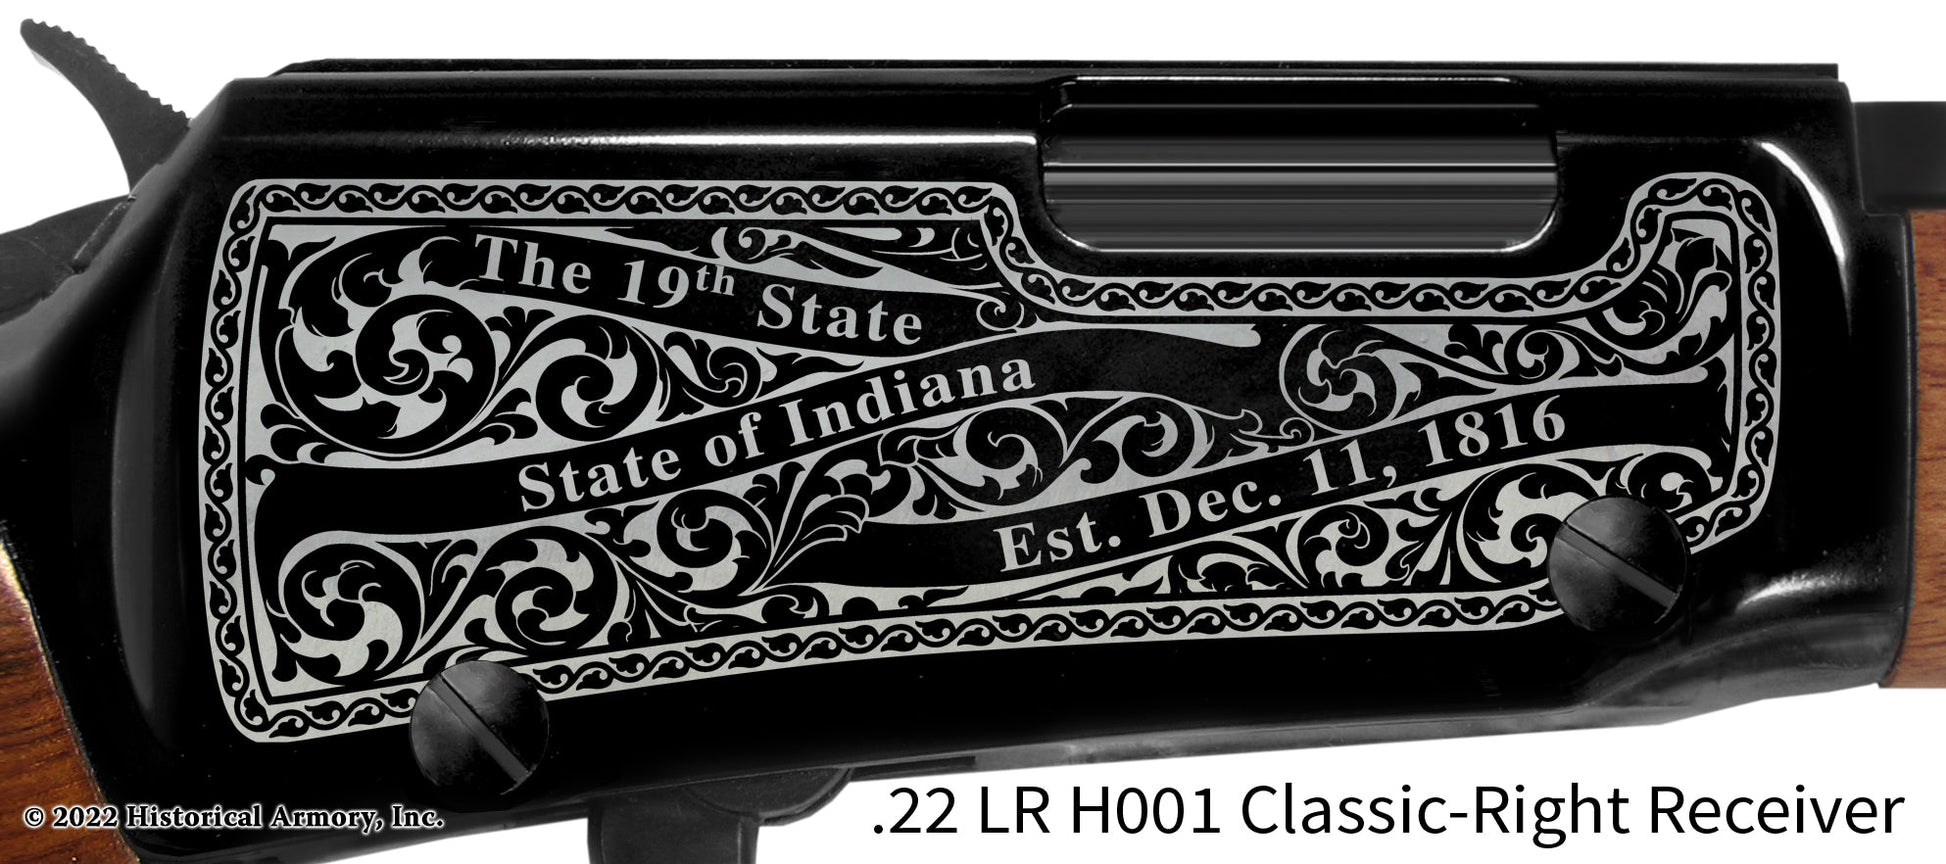 Orange County Indiana Engraved Henry H001 Rifle